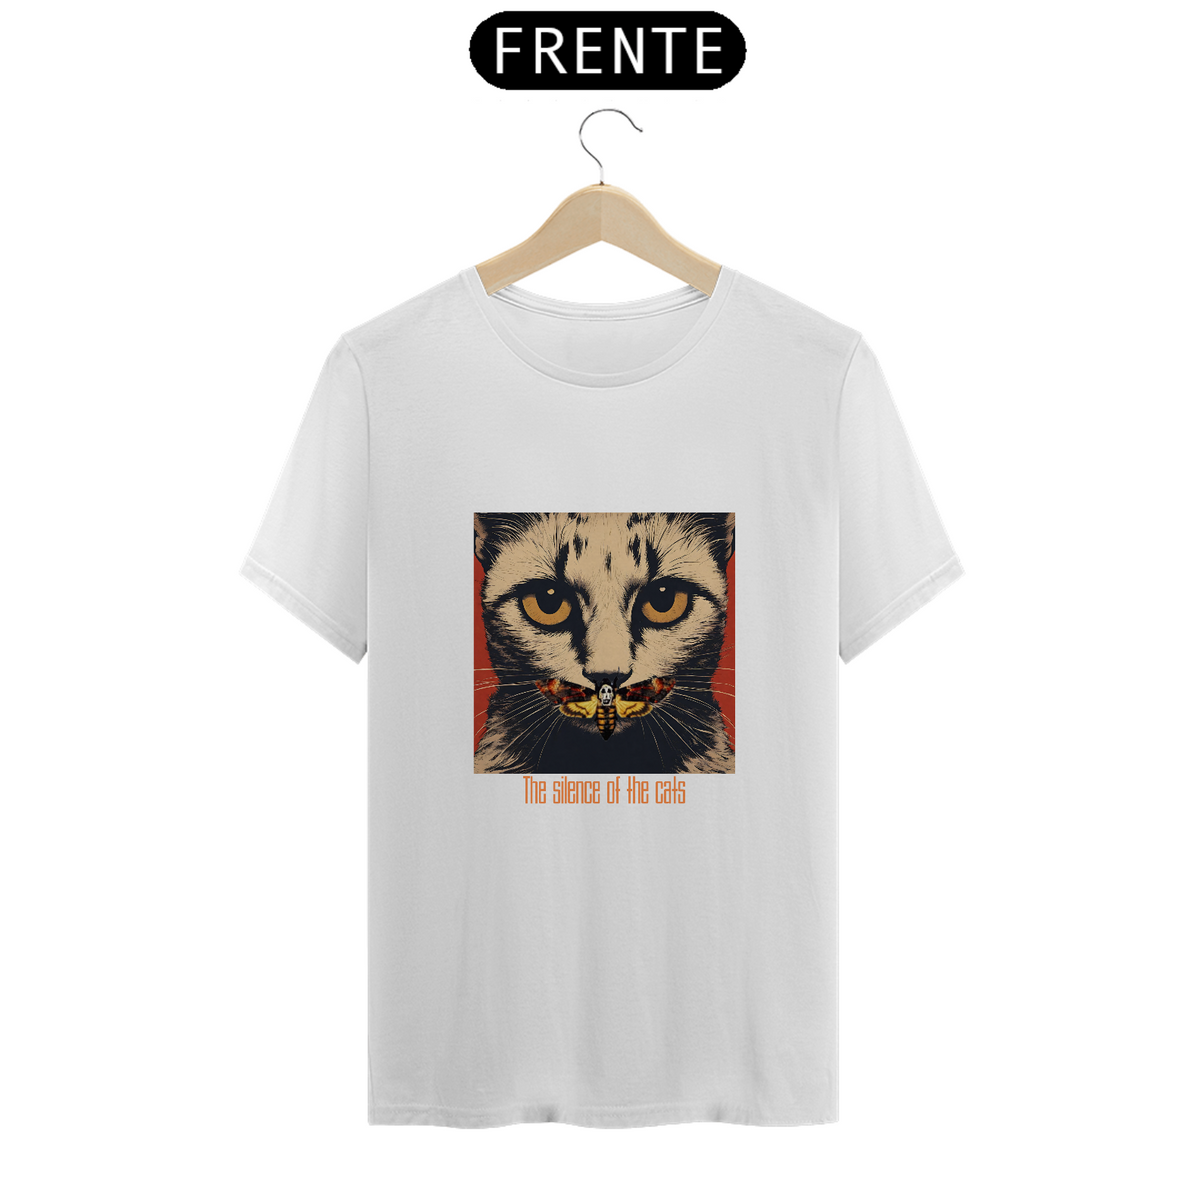 Nome do produto: Camiseta - The Silence of the Cats